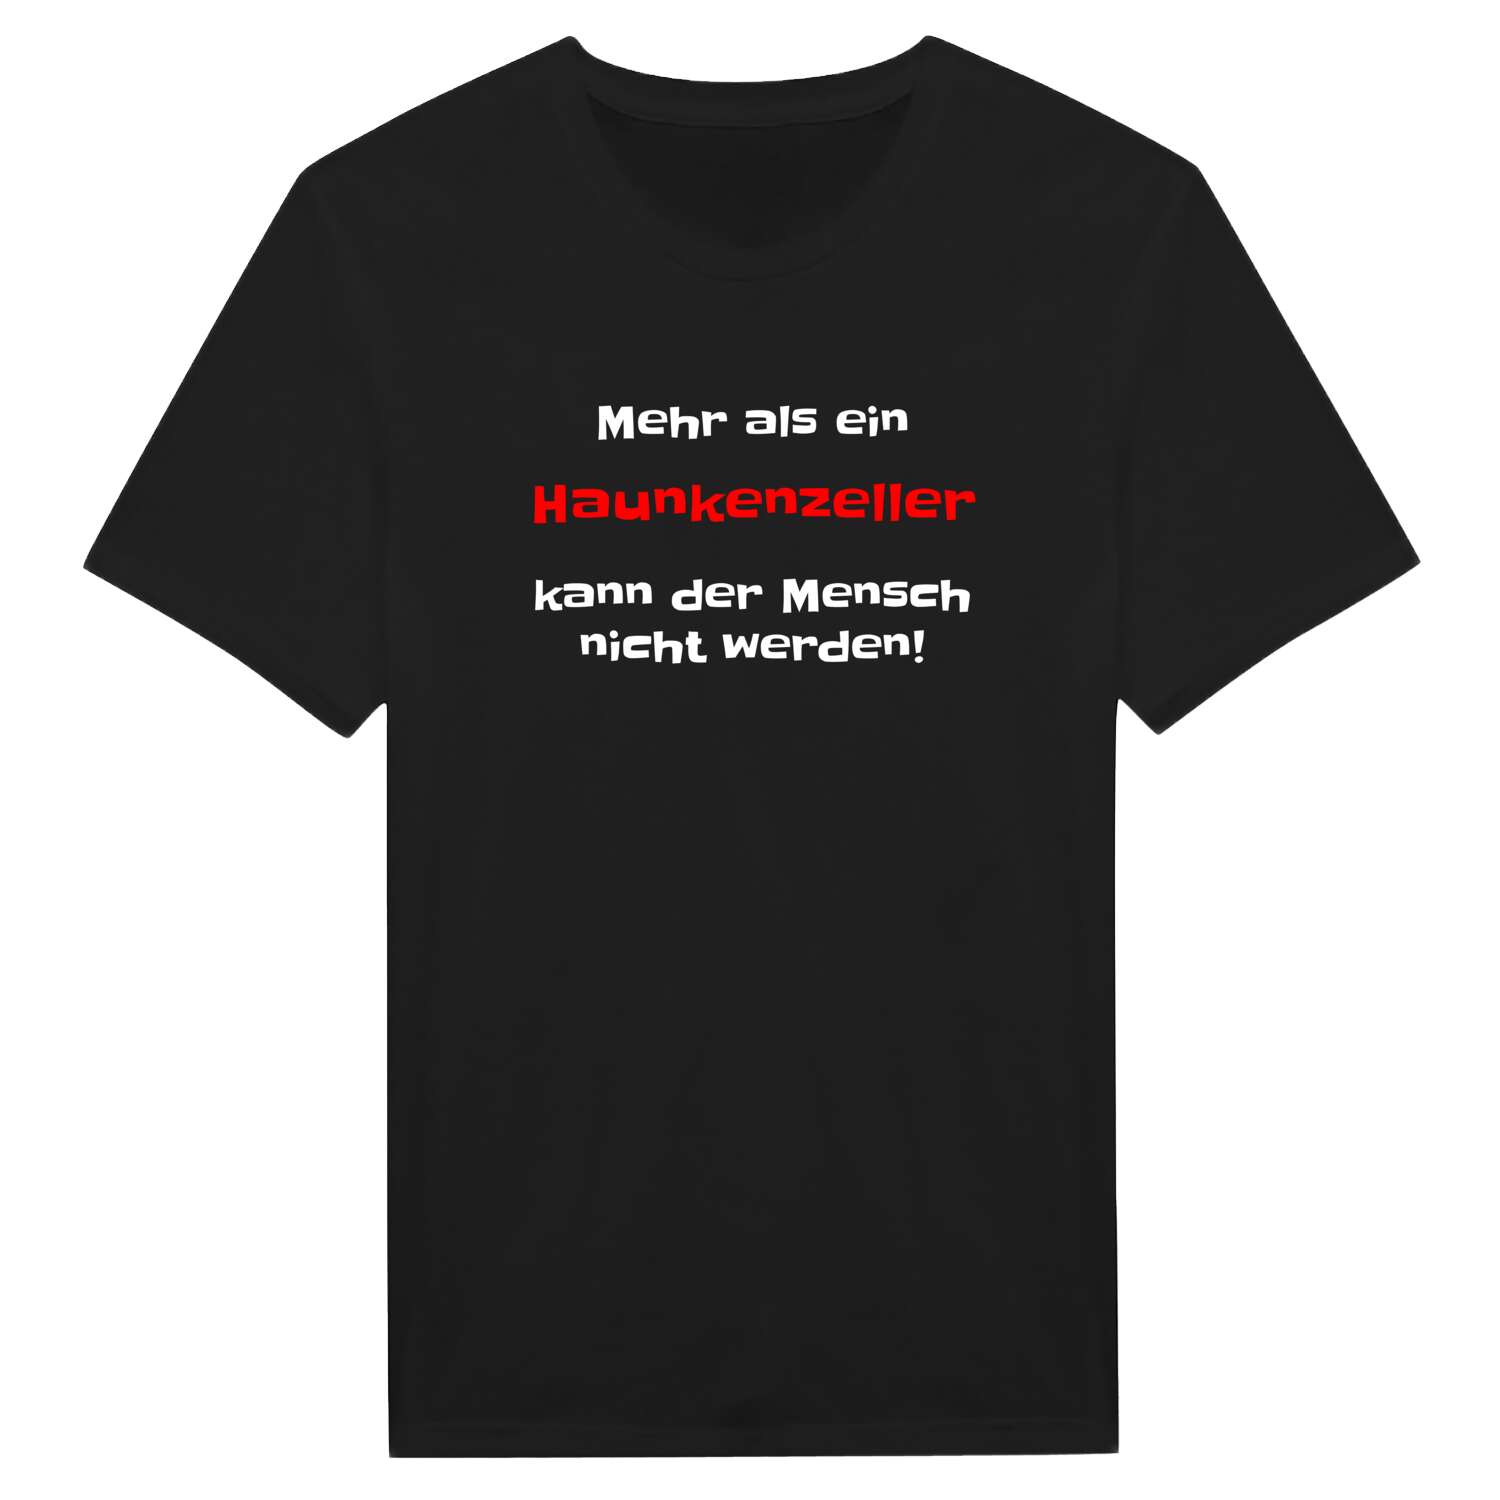 Haunkenzell T-Shirt »Mehr als ein«